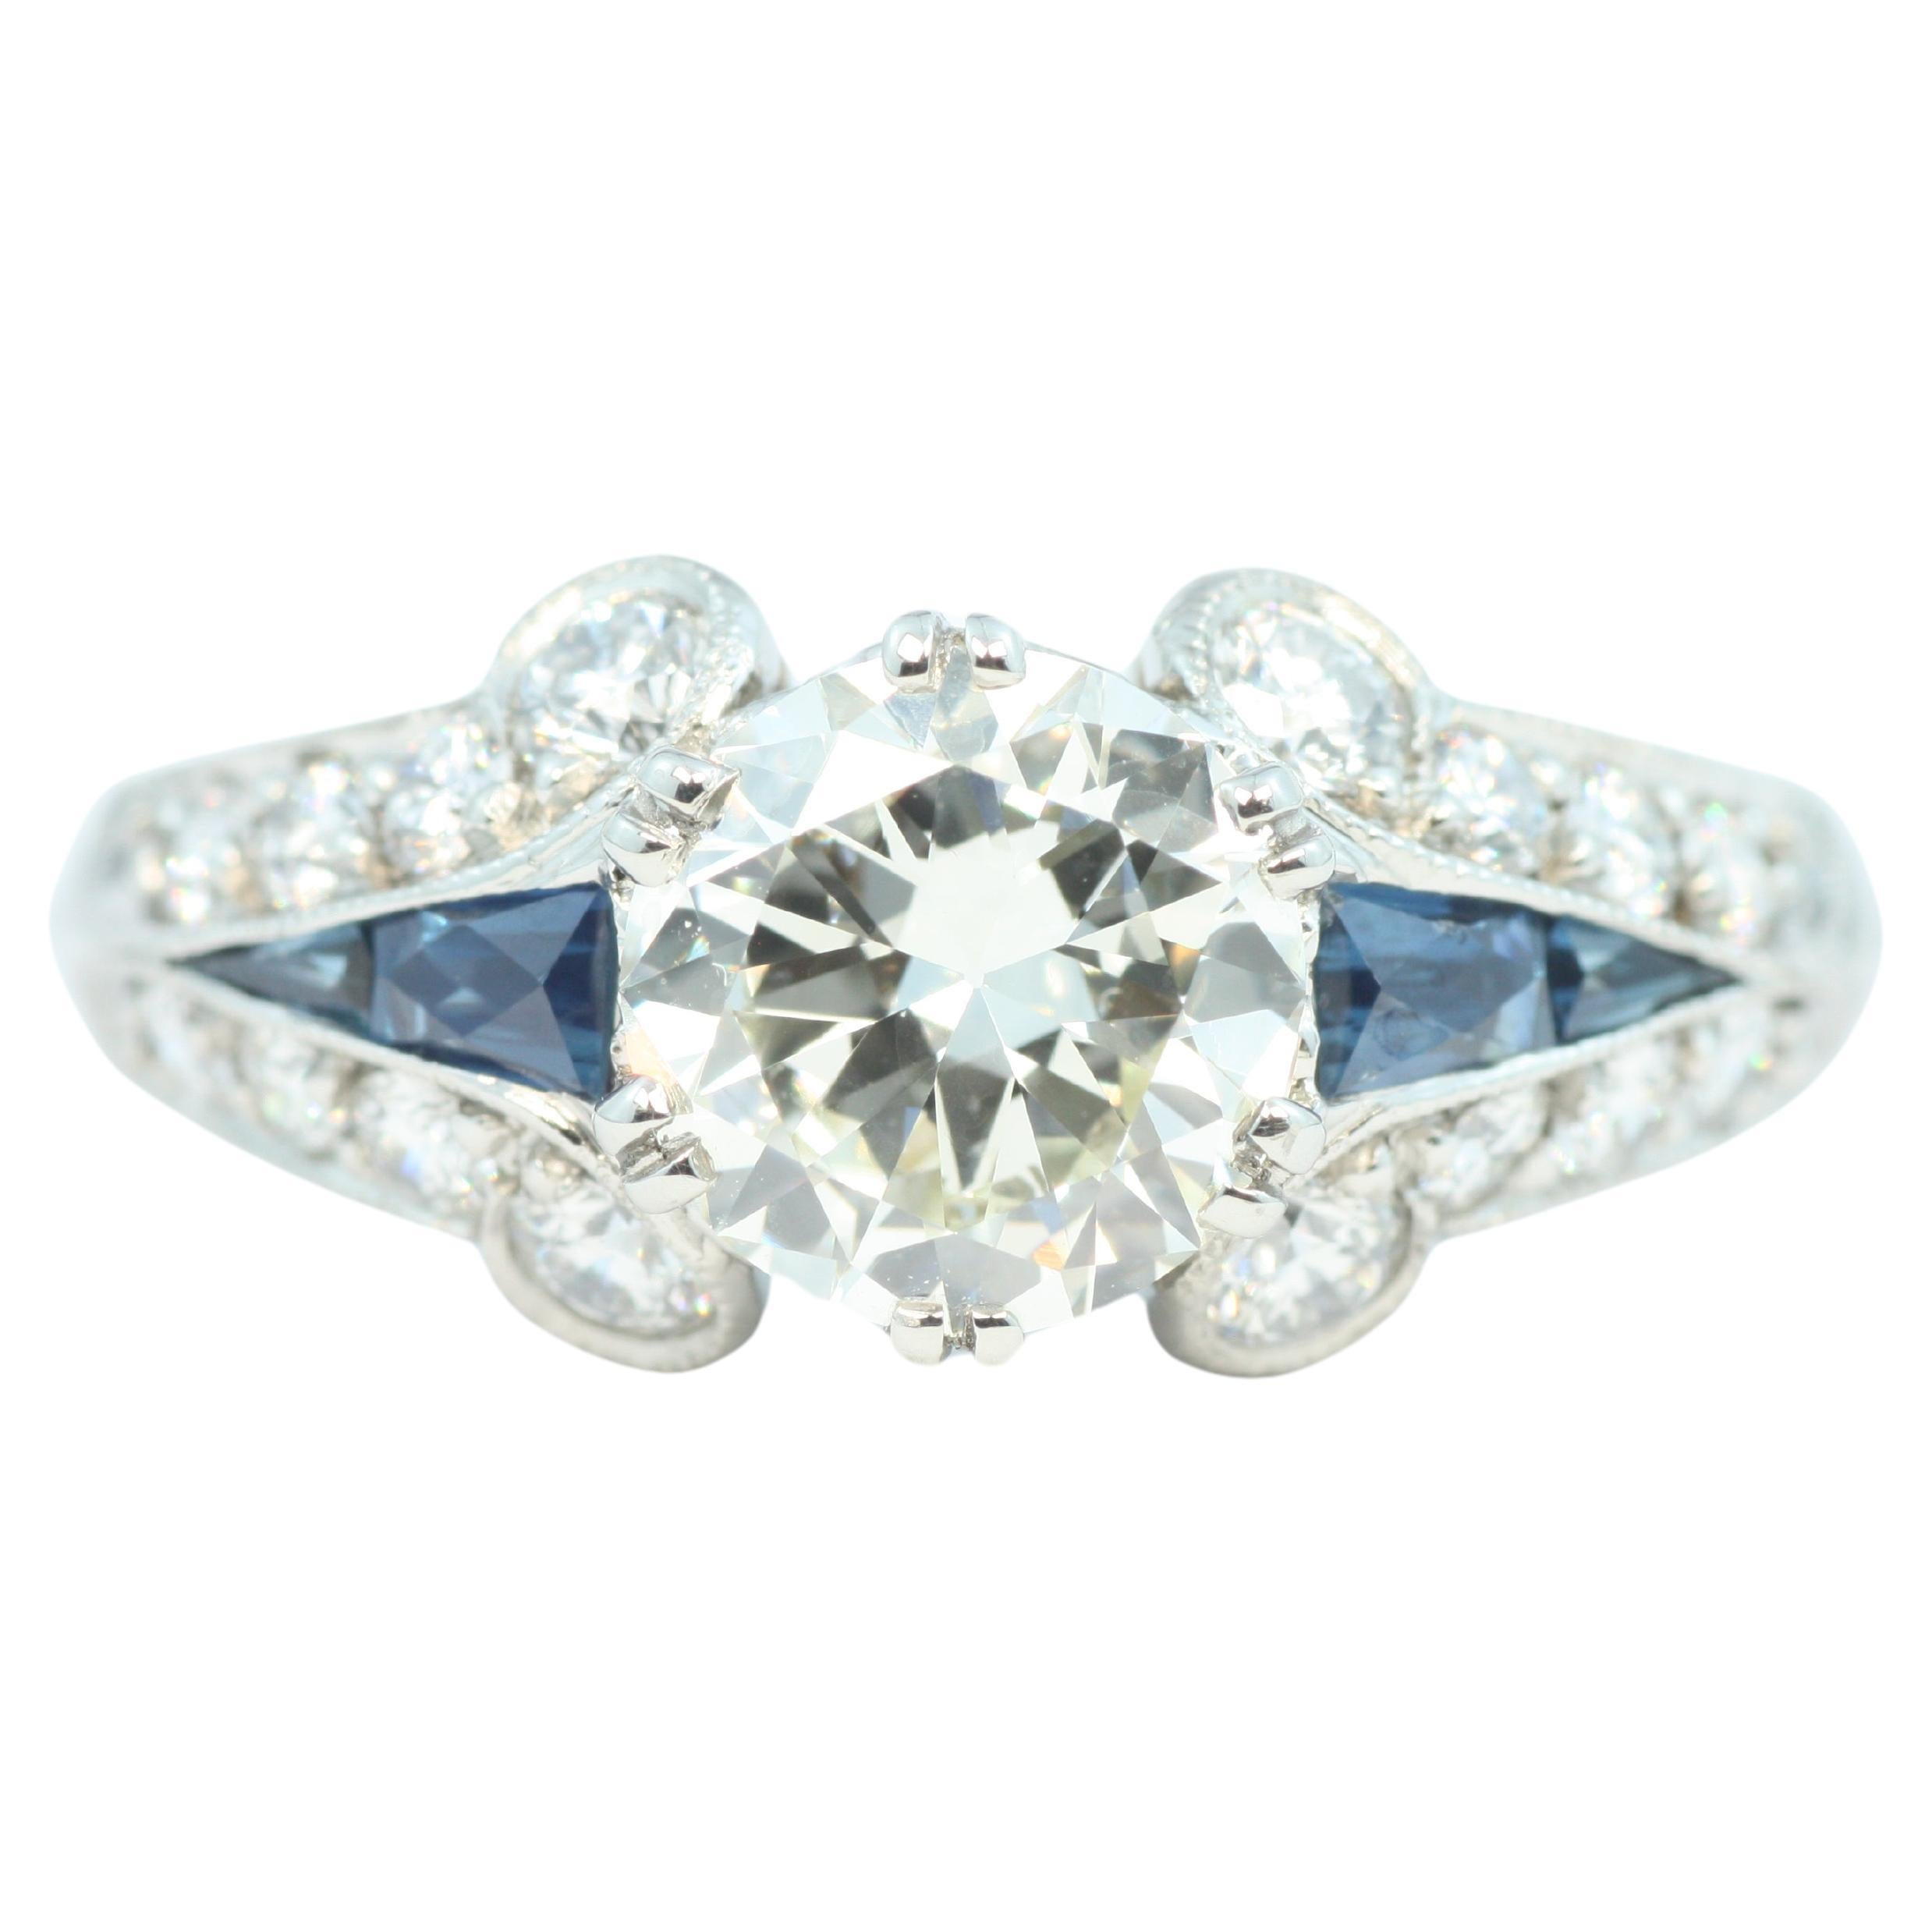 1.7 Carat Total Diamond & Sapphire Art Deco Palladium/Platinum Engagement Ring